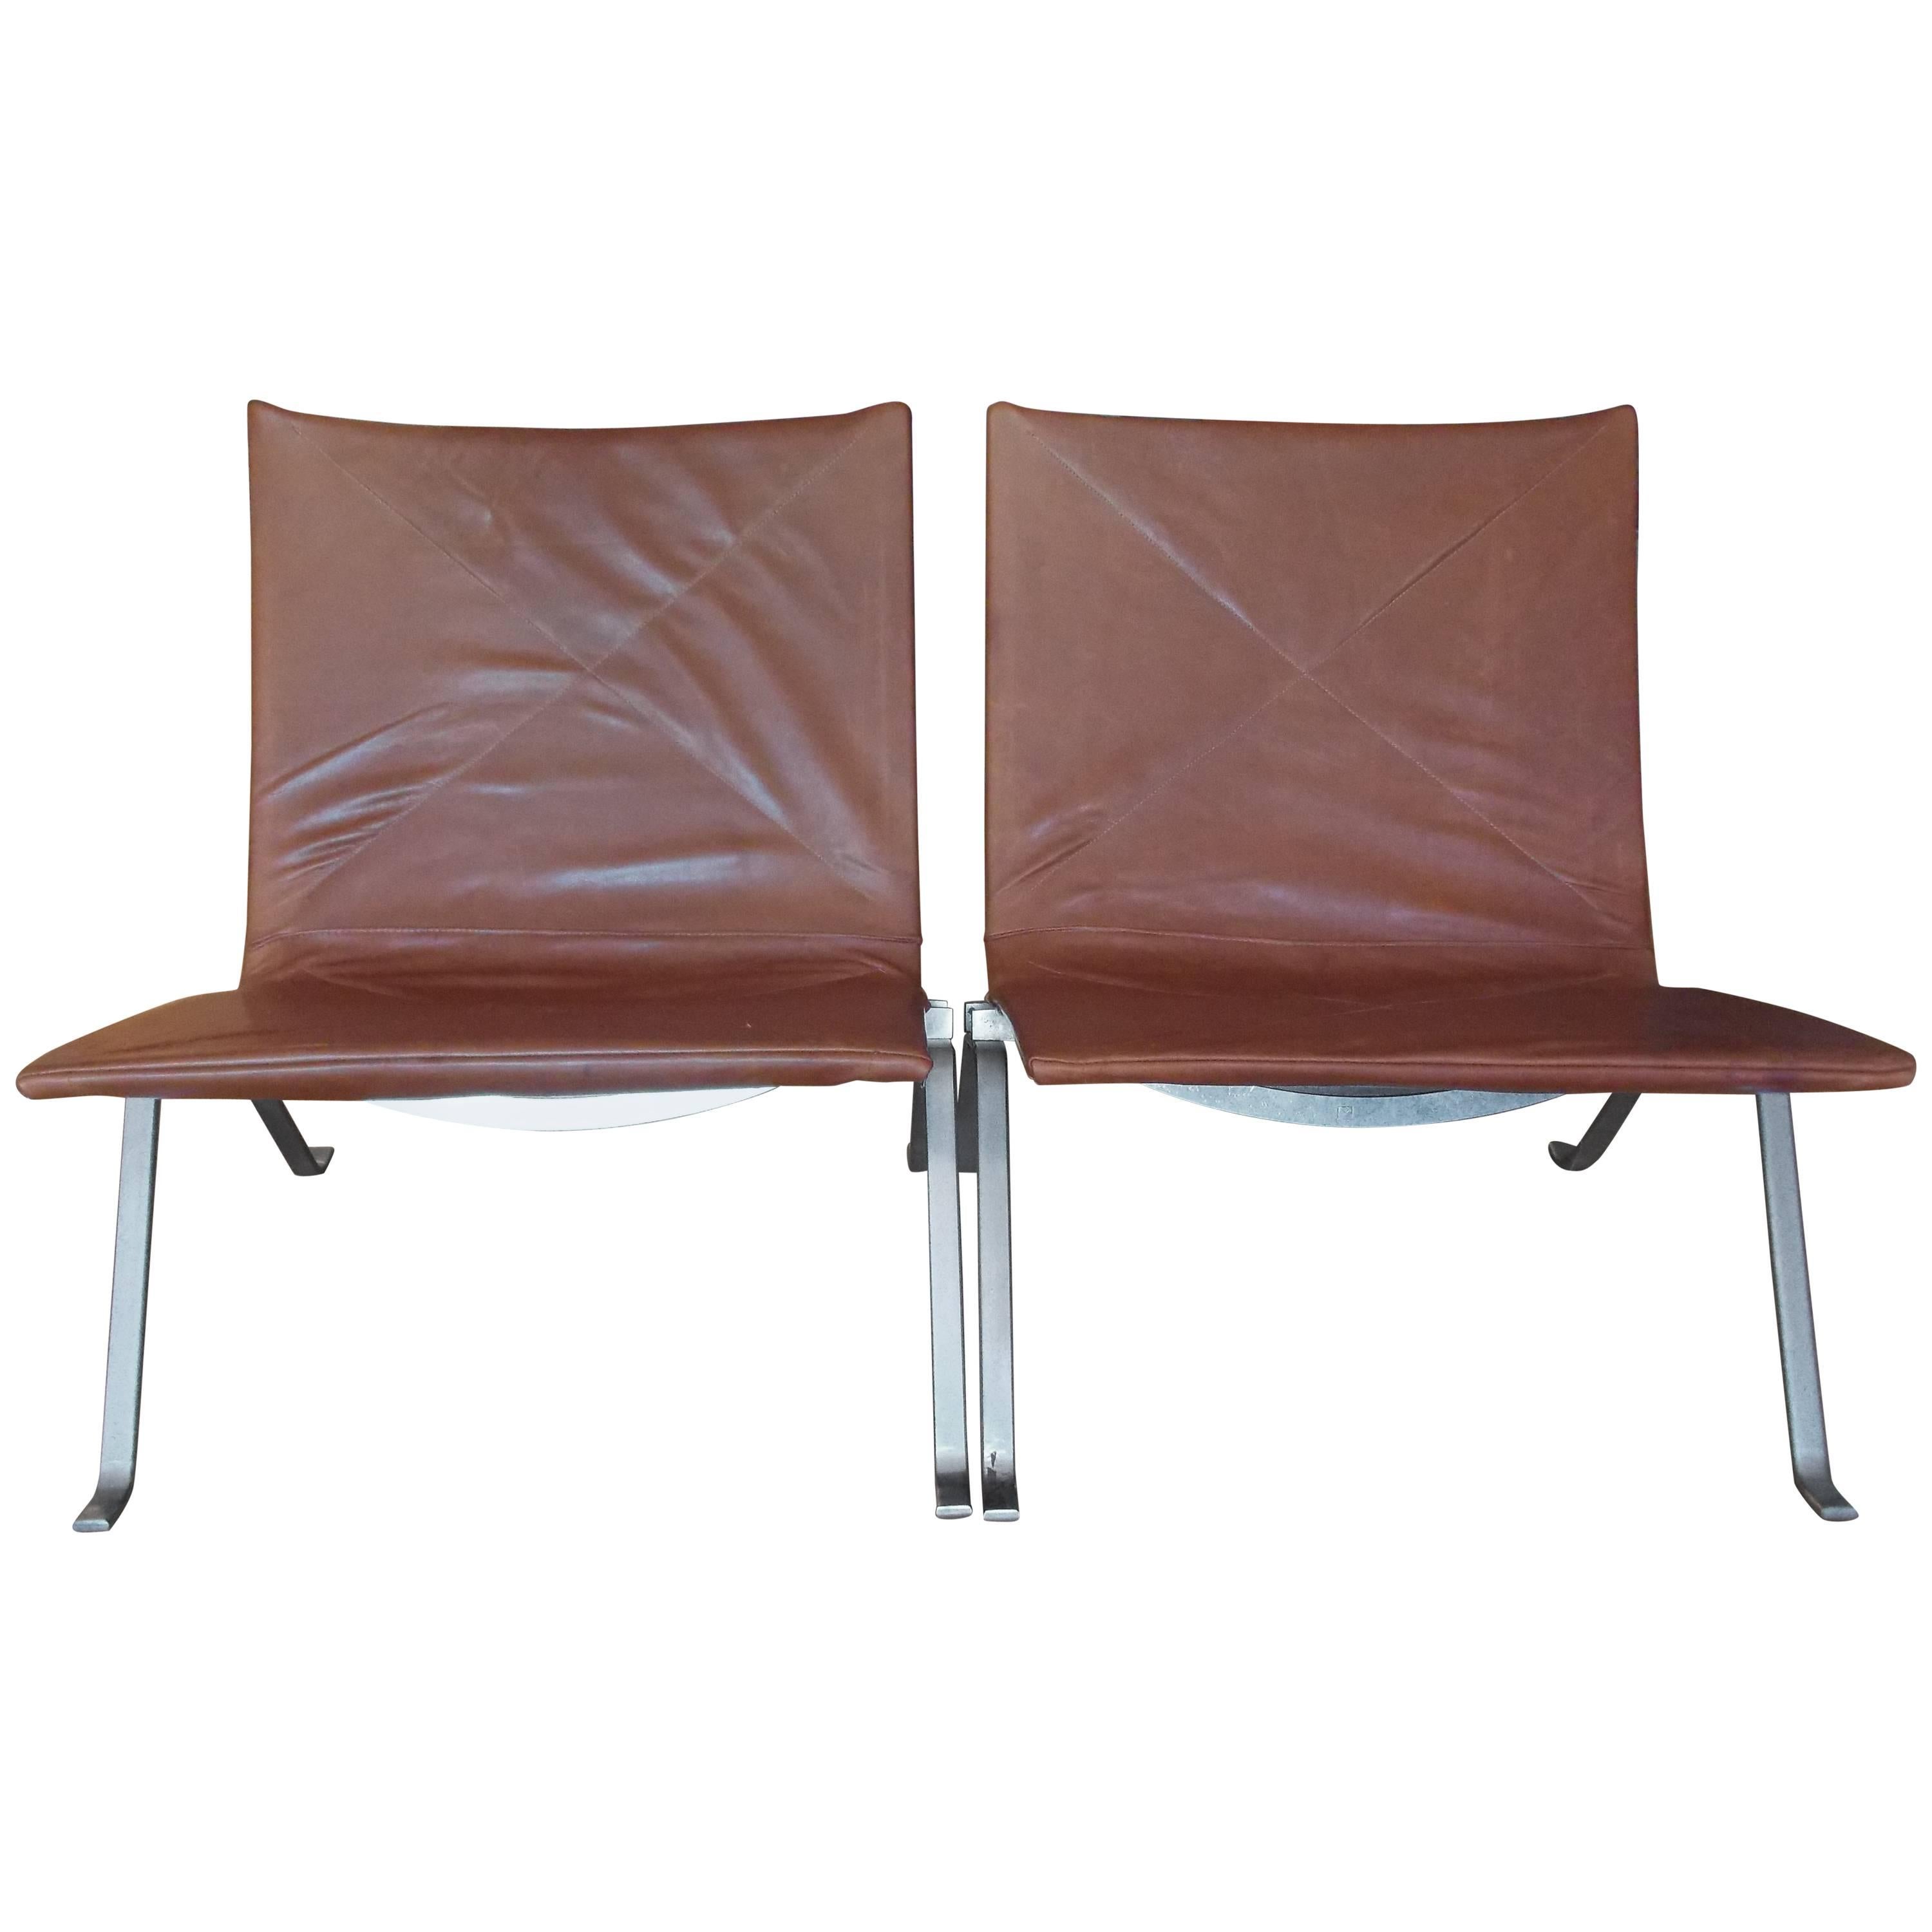 Poul Kjaerholm Lounge Chairs for E.Kold Christensen, Denmark